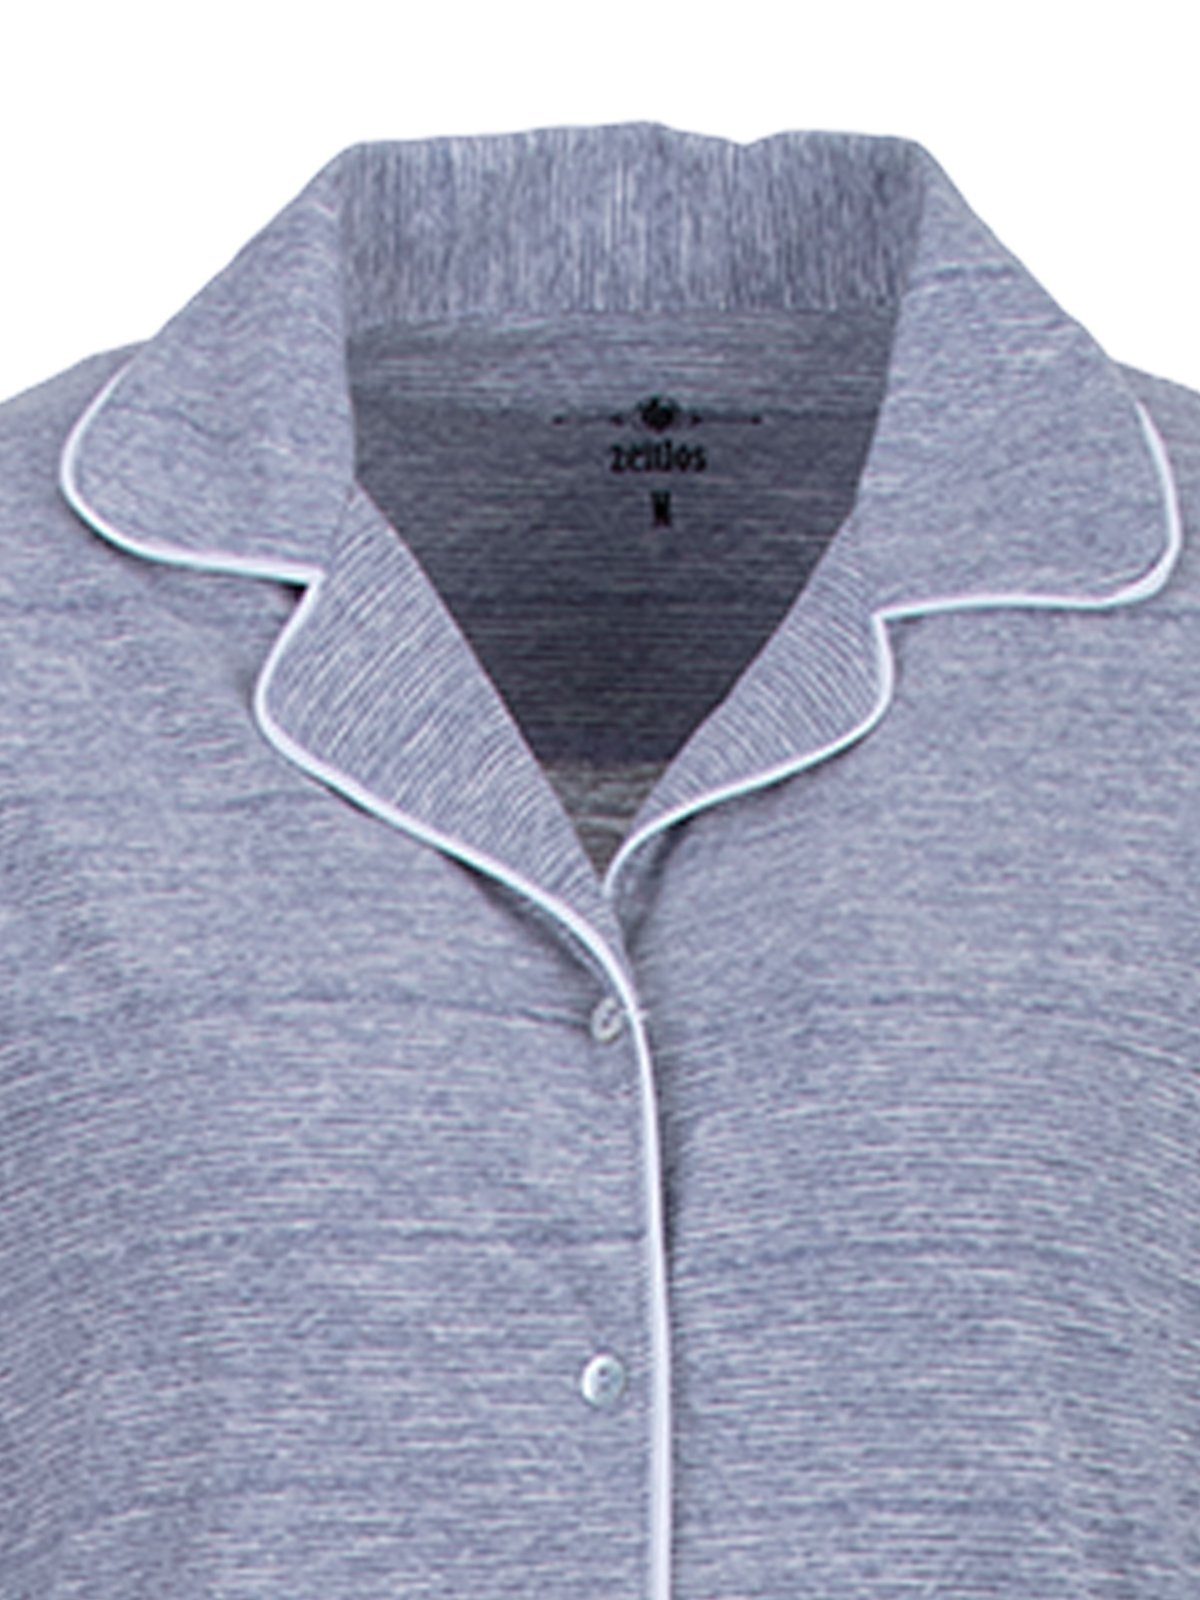 Set Melange zeitlos Streifen grau Pyjama Schlafanzug - Langarm